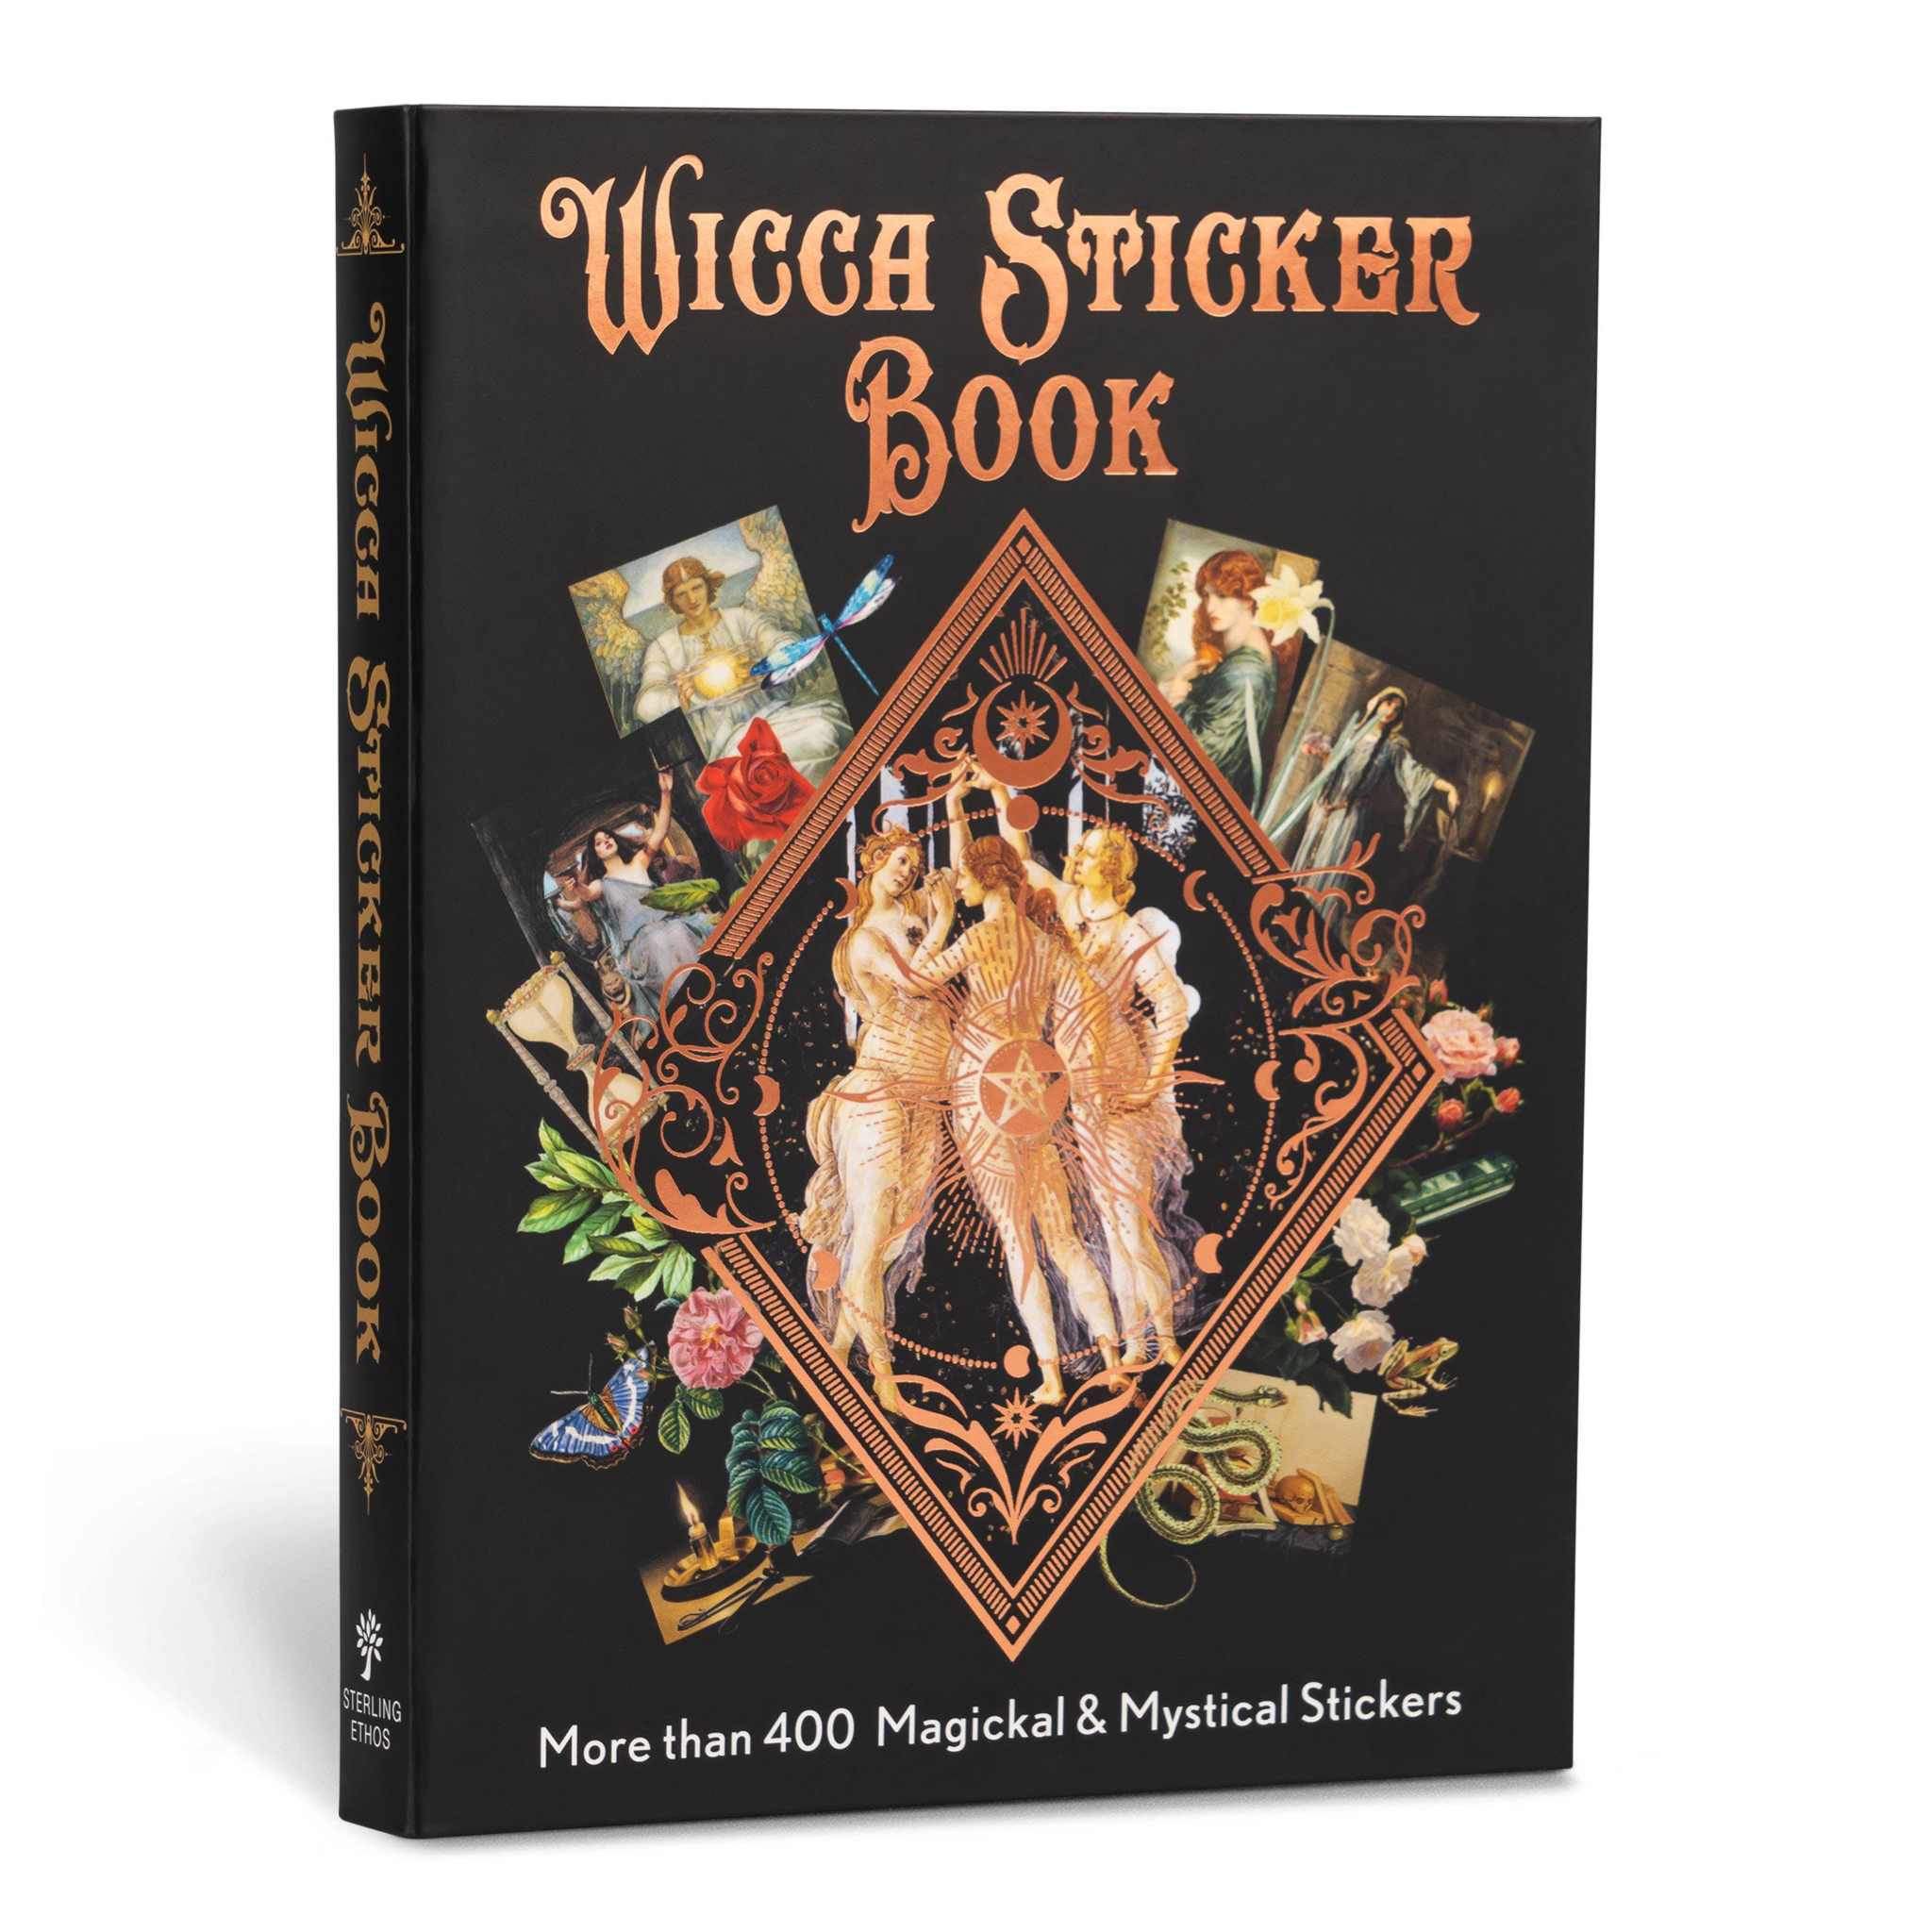 Wicca Sticker Book: 400+ Magickal & Mystical StickersSacred Book Store400+ Magickal & Mystical Stickers